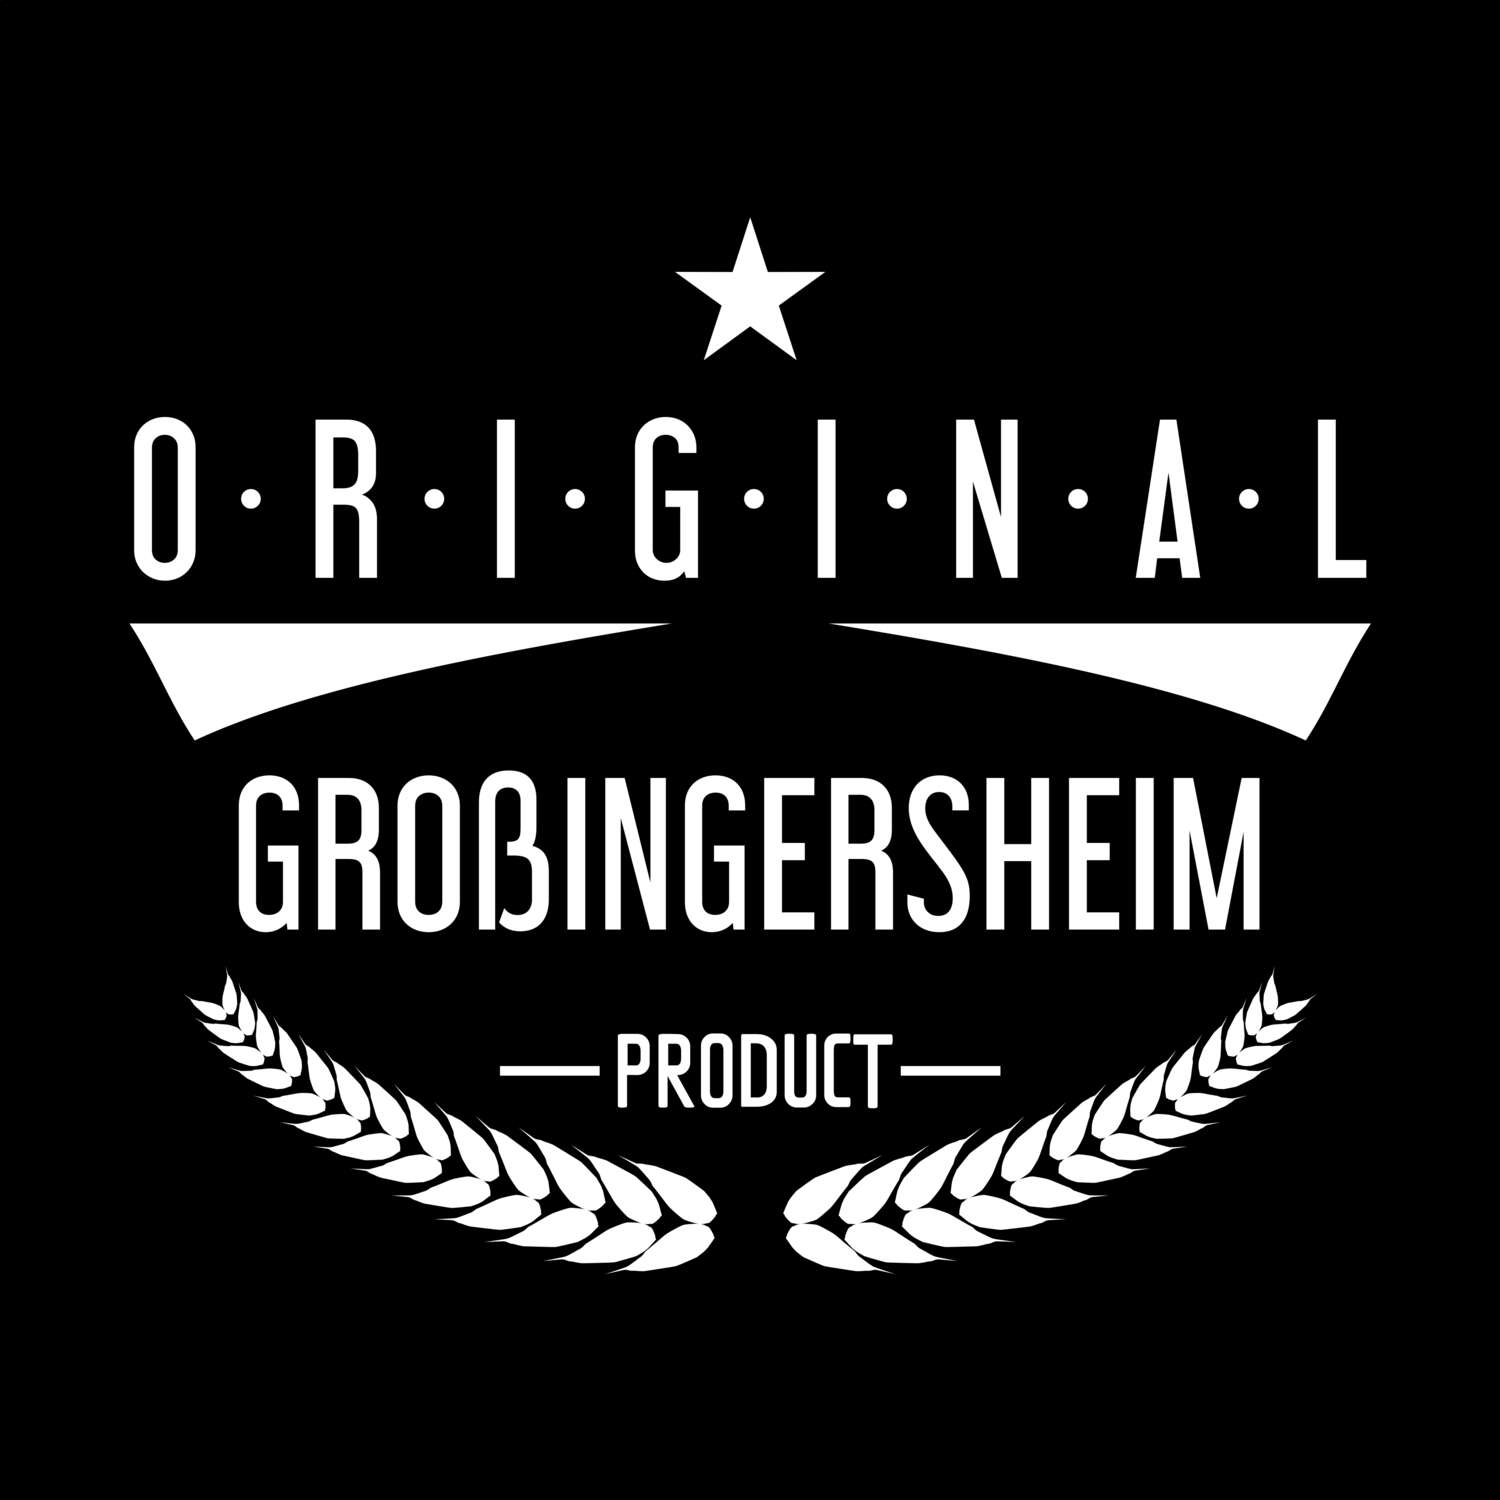 Großingersheim T-Shirt »Original Product«